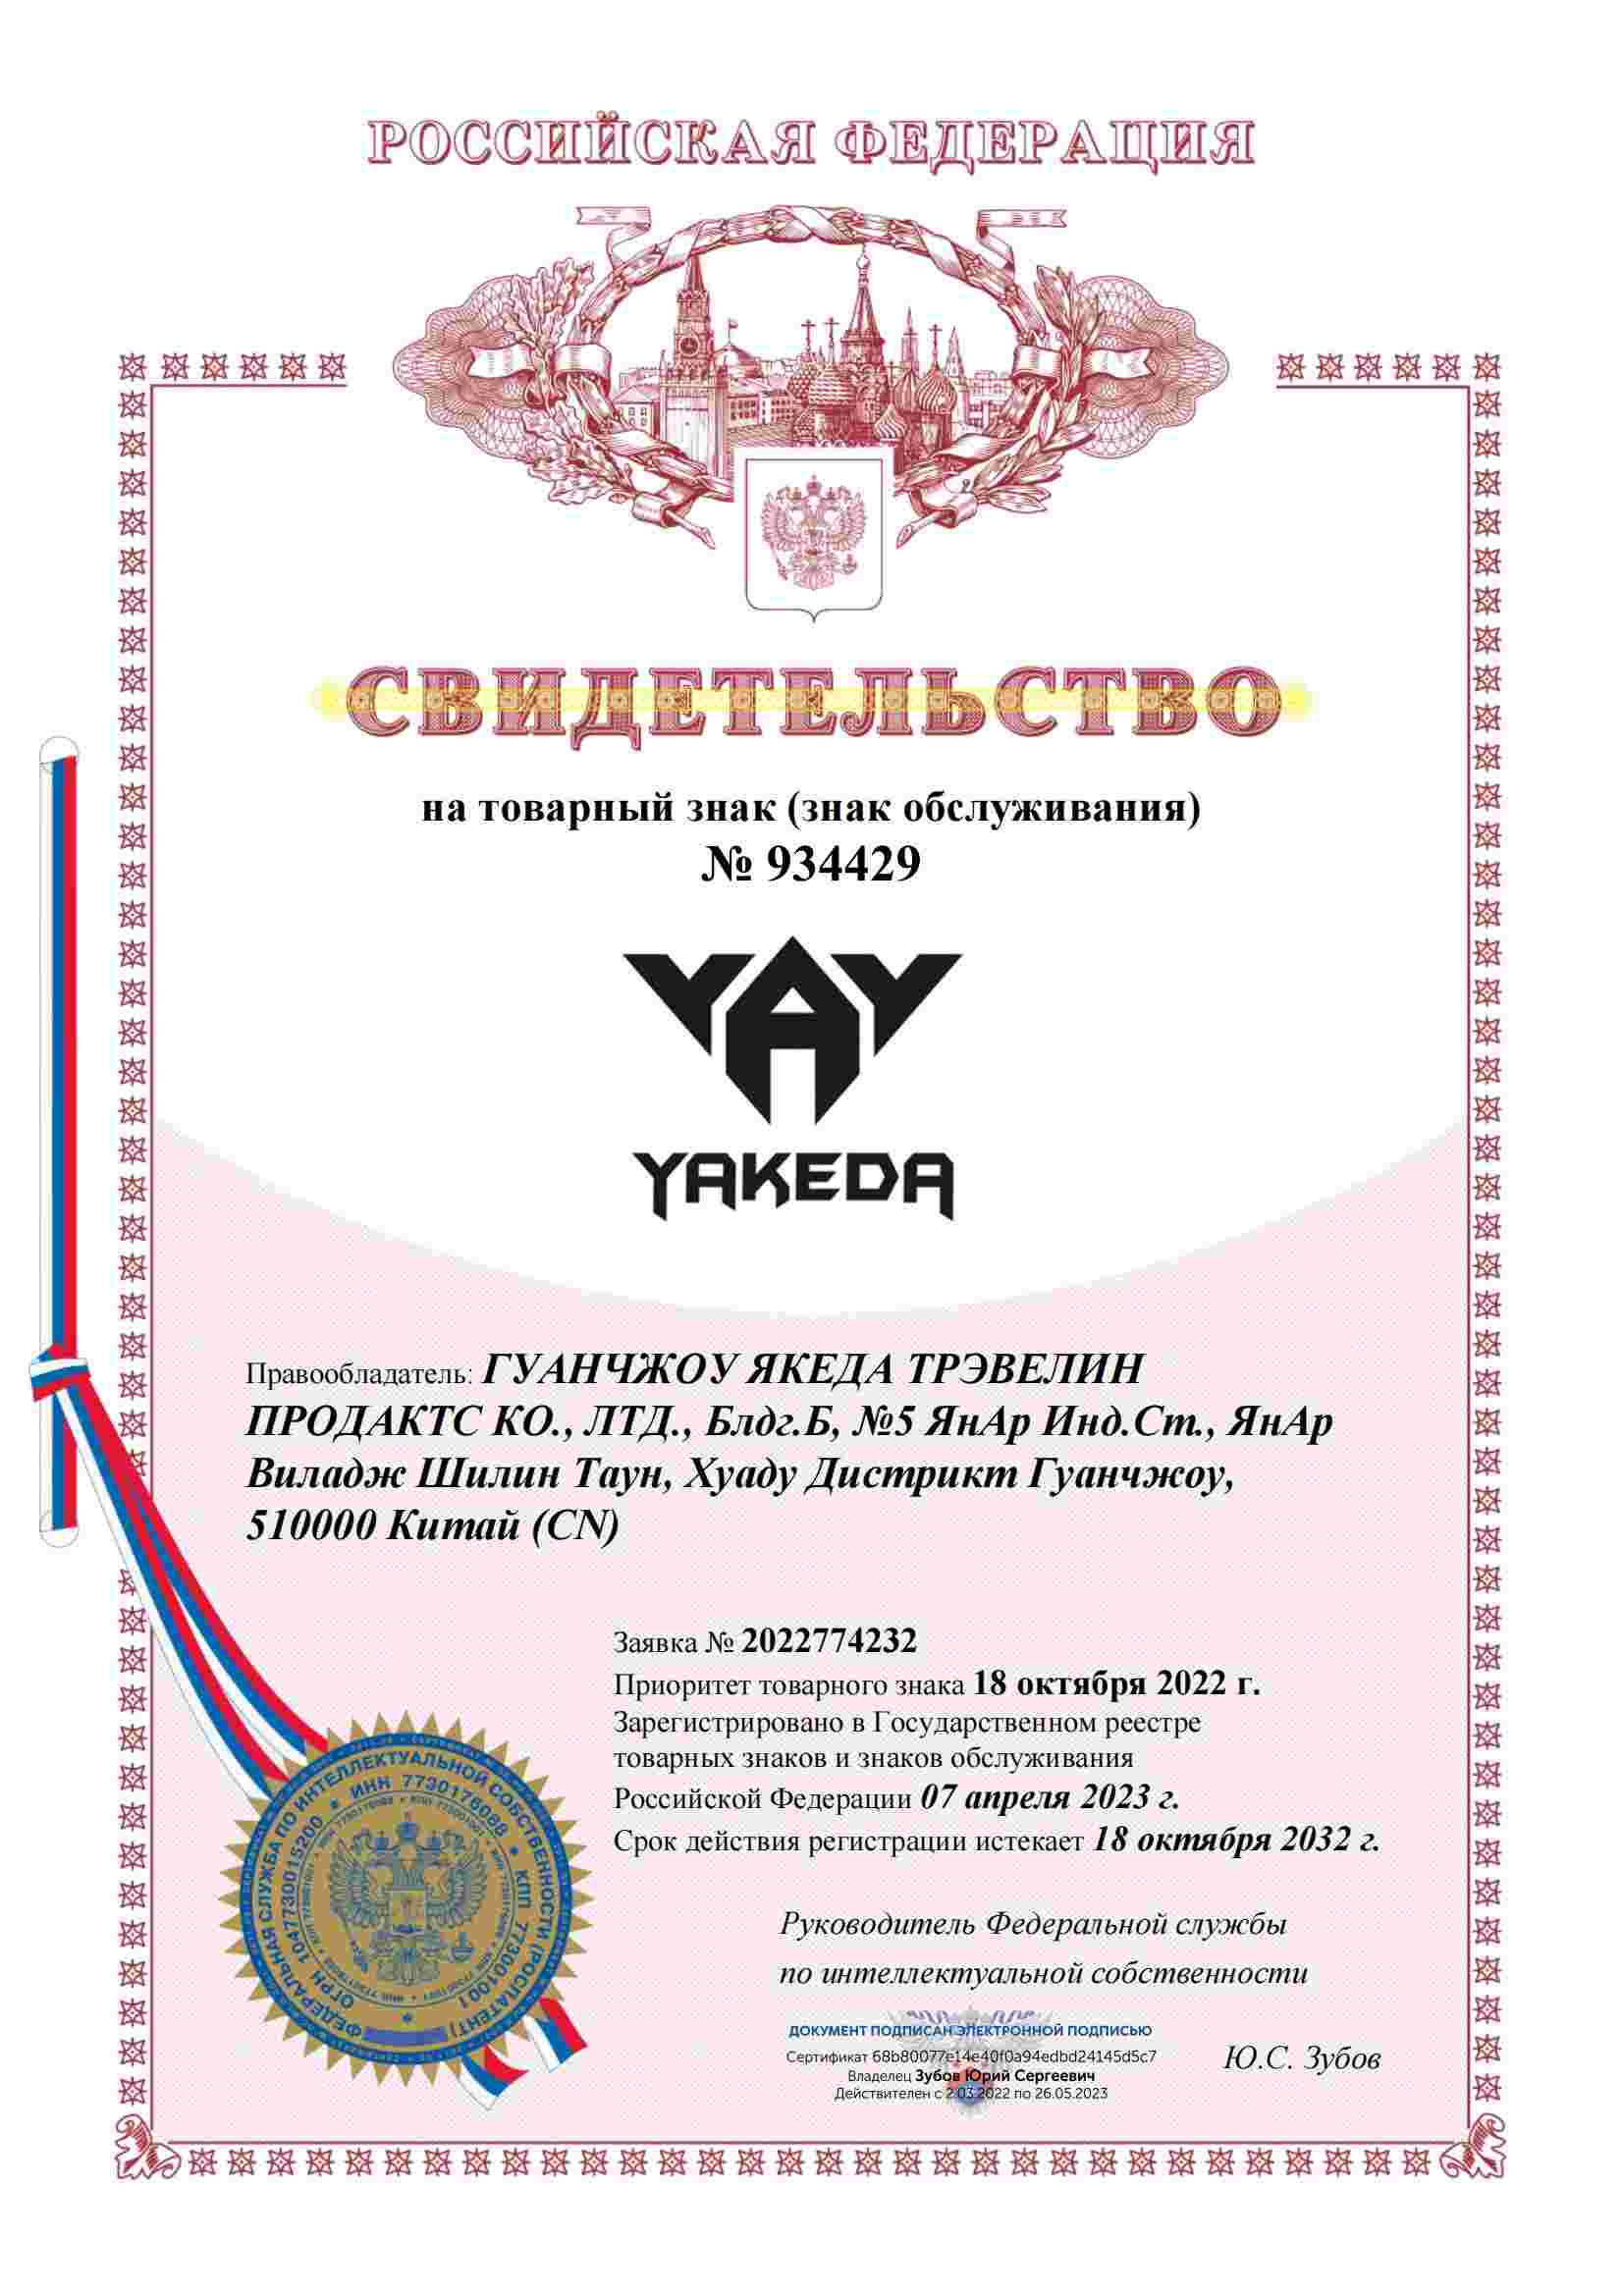 Certificado de marca registrada da Rússia